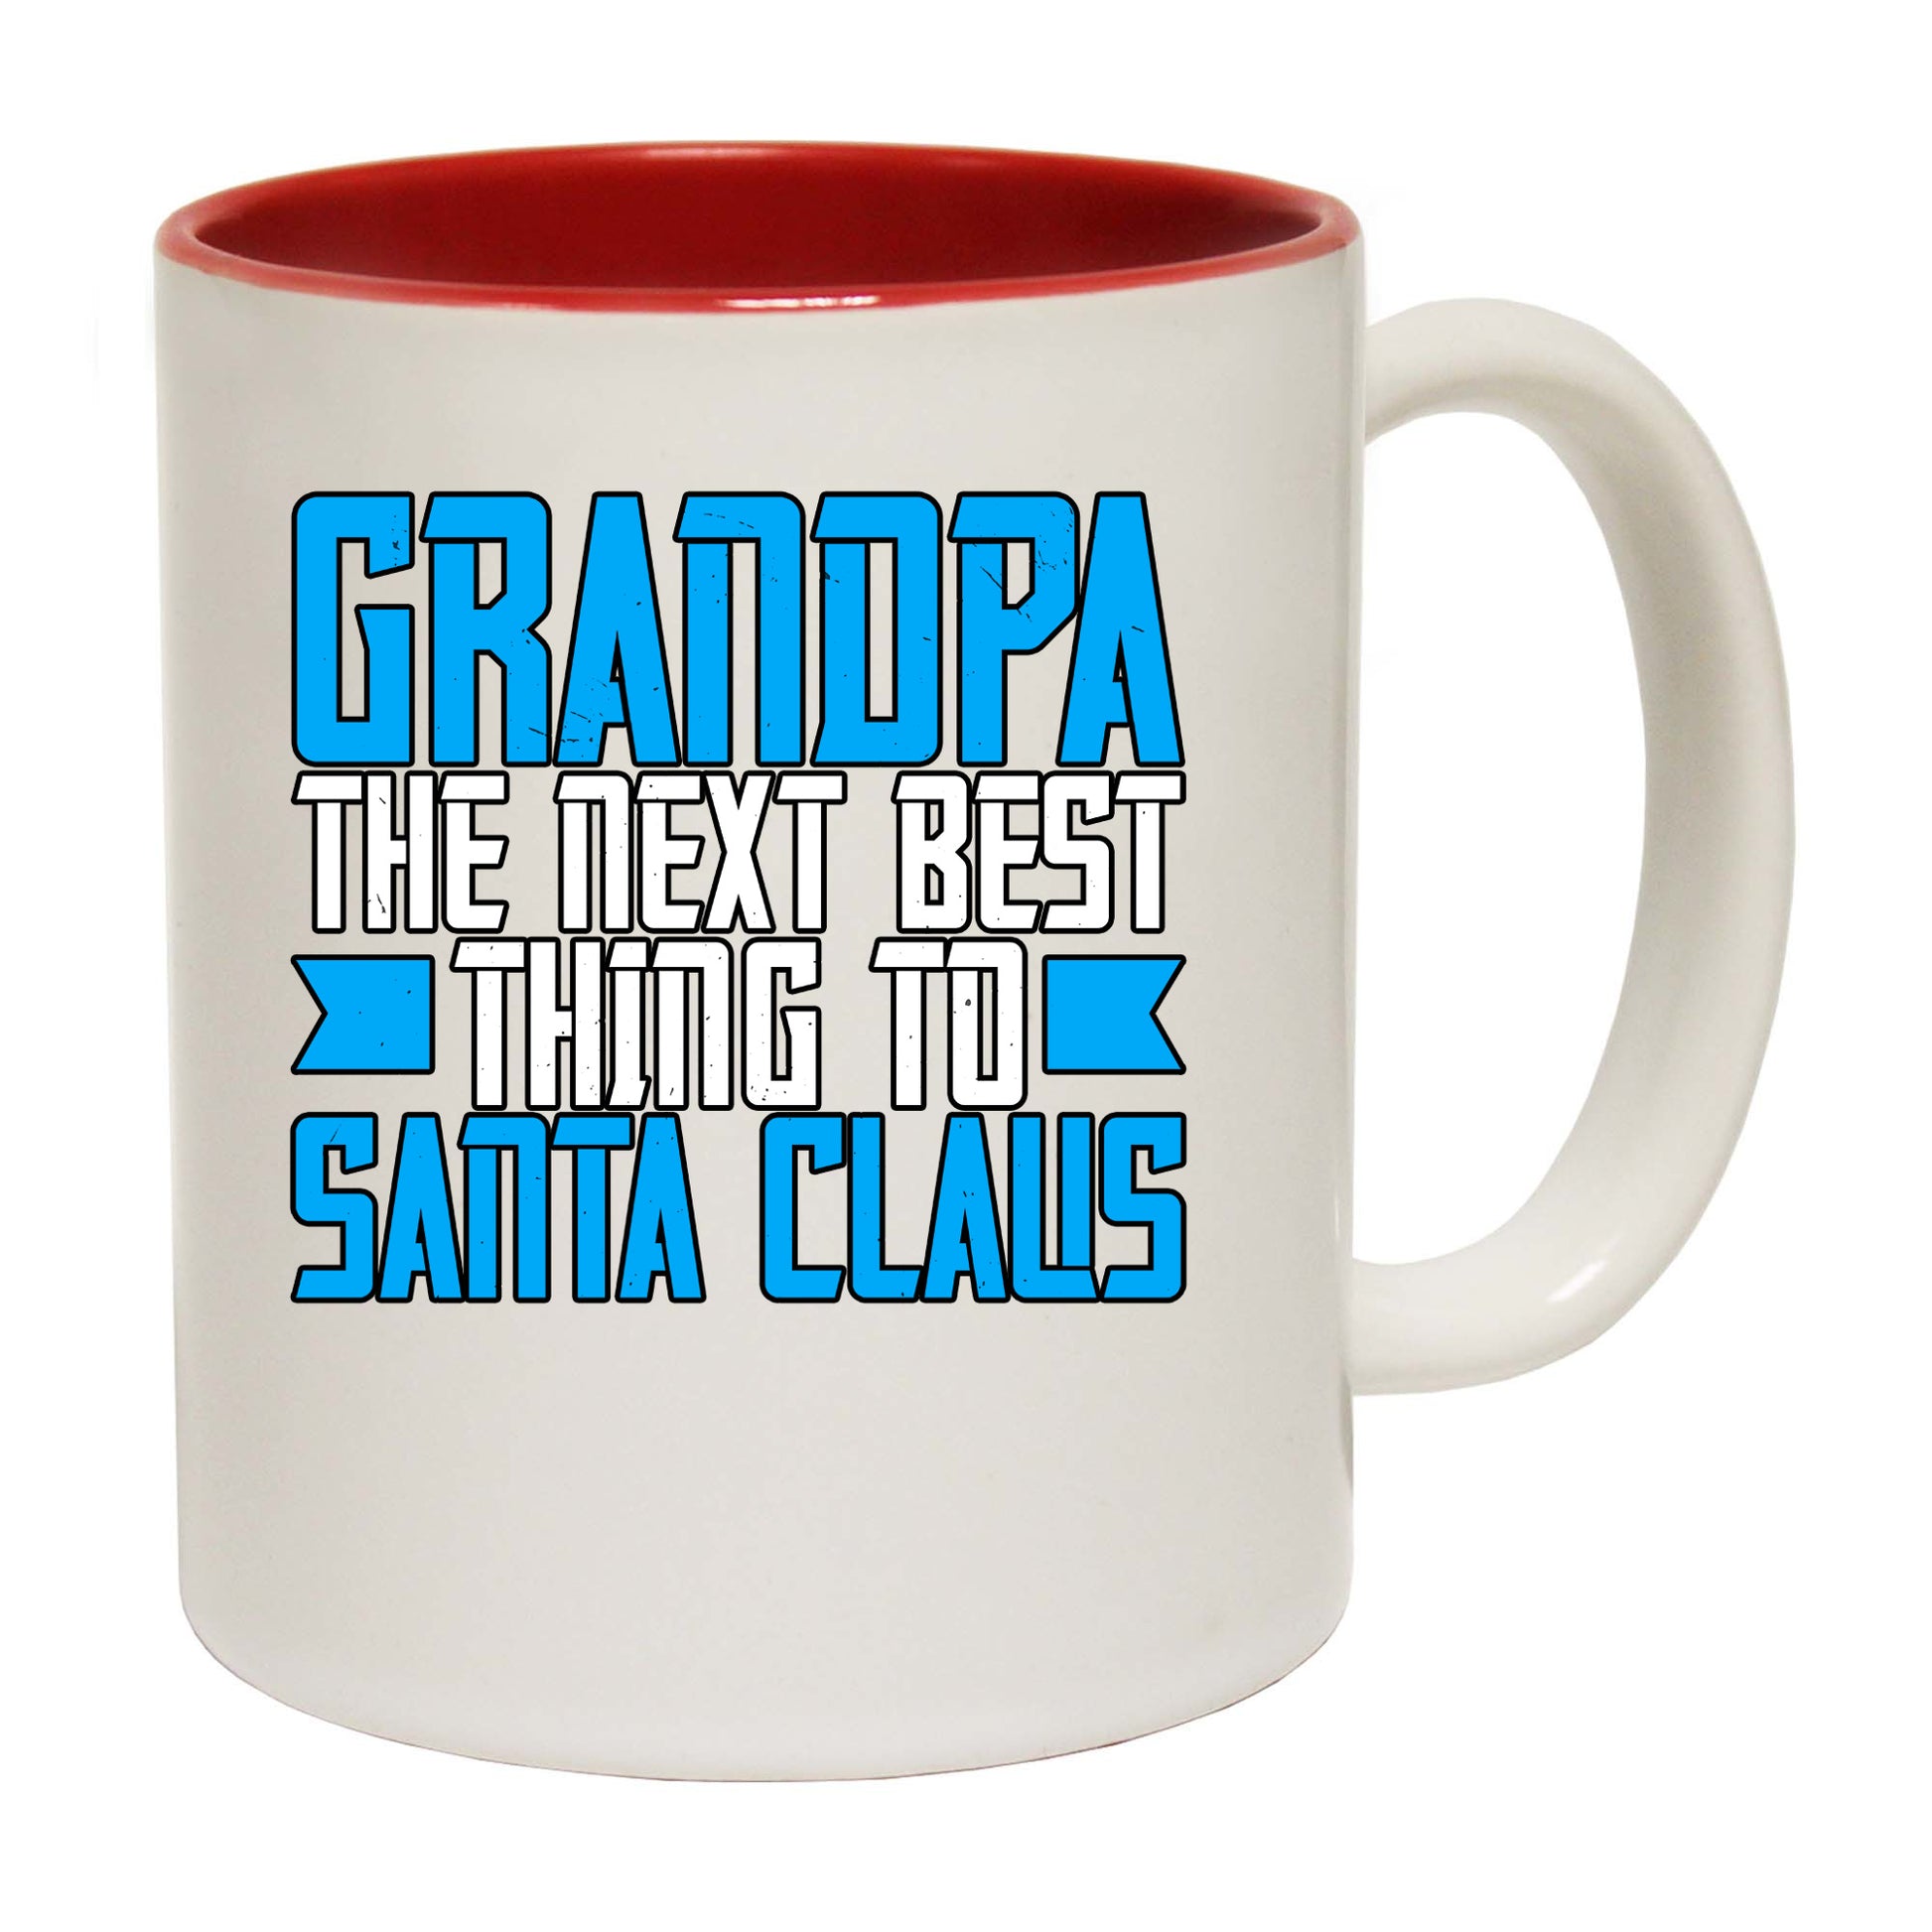 The Christmas Hub - Grandpa The Next Best Thing To Santa Claus - Funny Coffee Mug